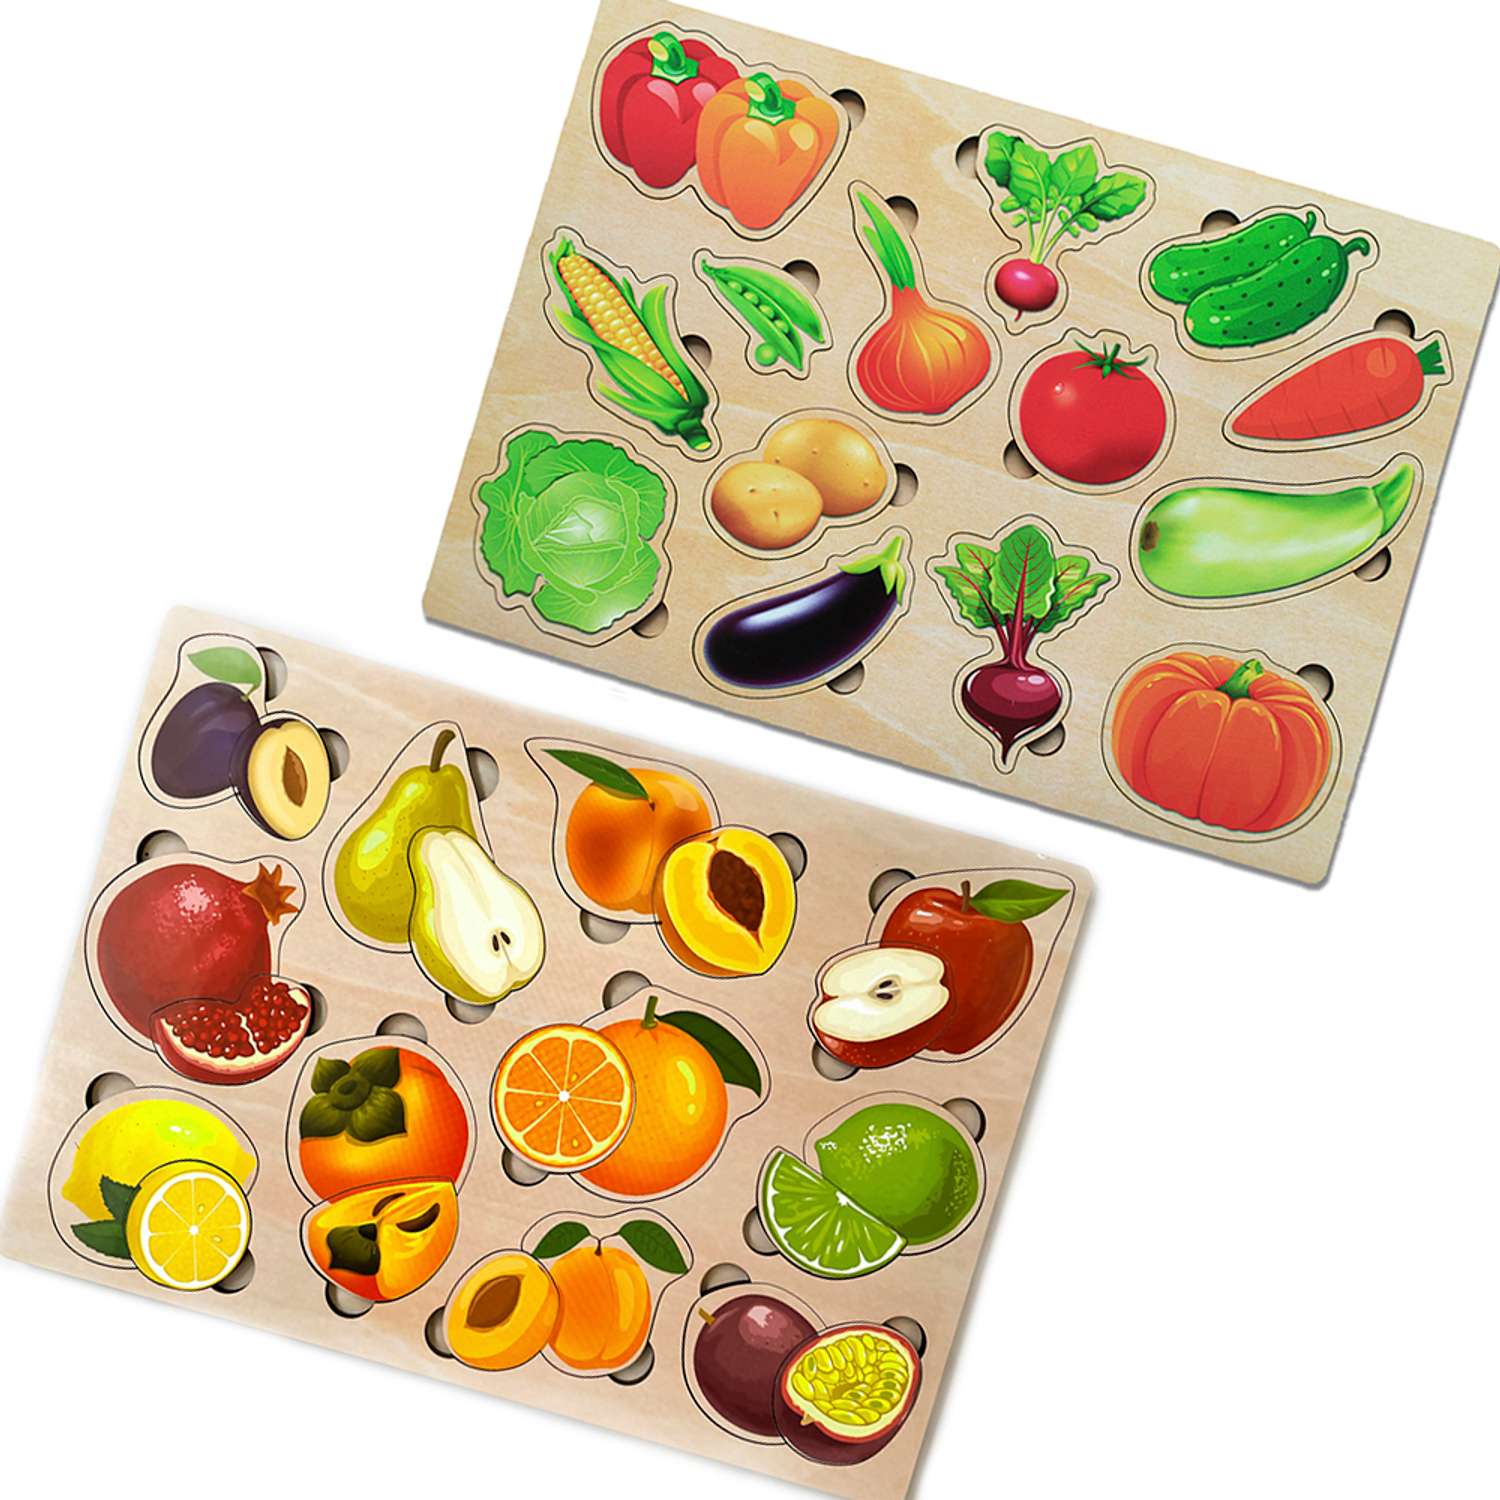 Игровой набор Parrot Carrot рамки вкладыши для малышей Фрукты-половинки и овощи 2 шт - фото 1